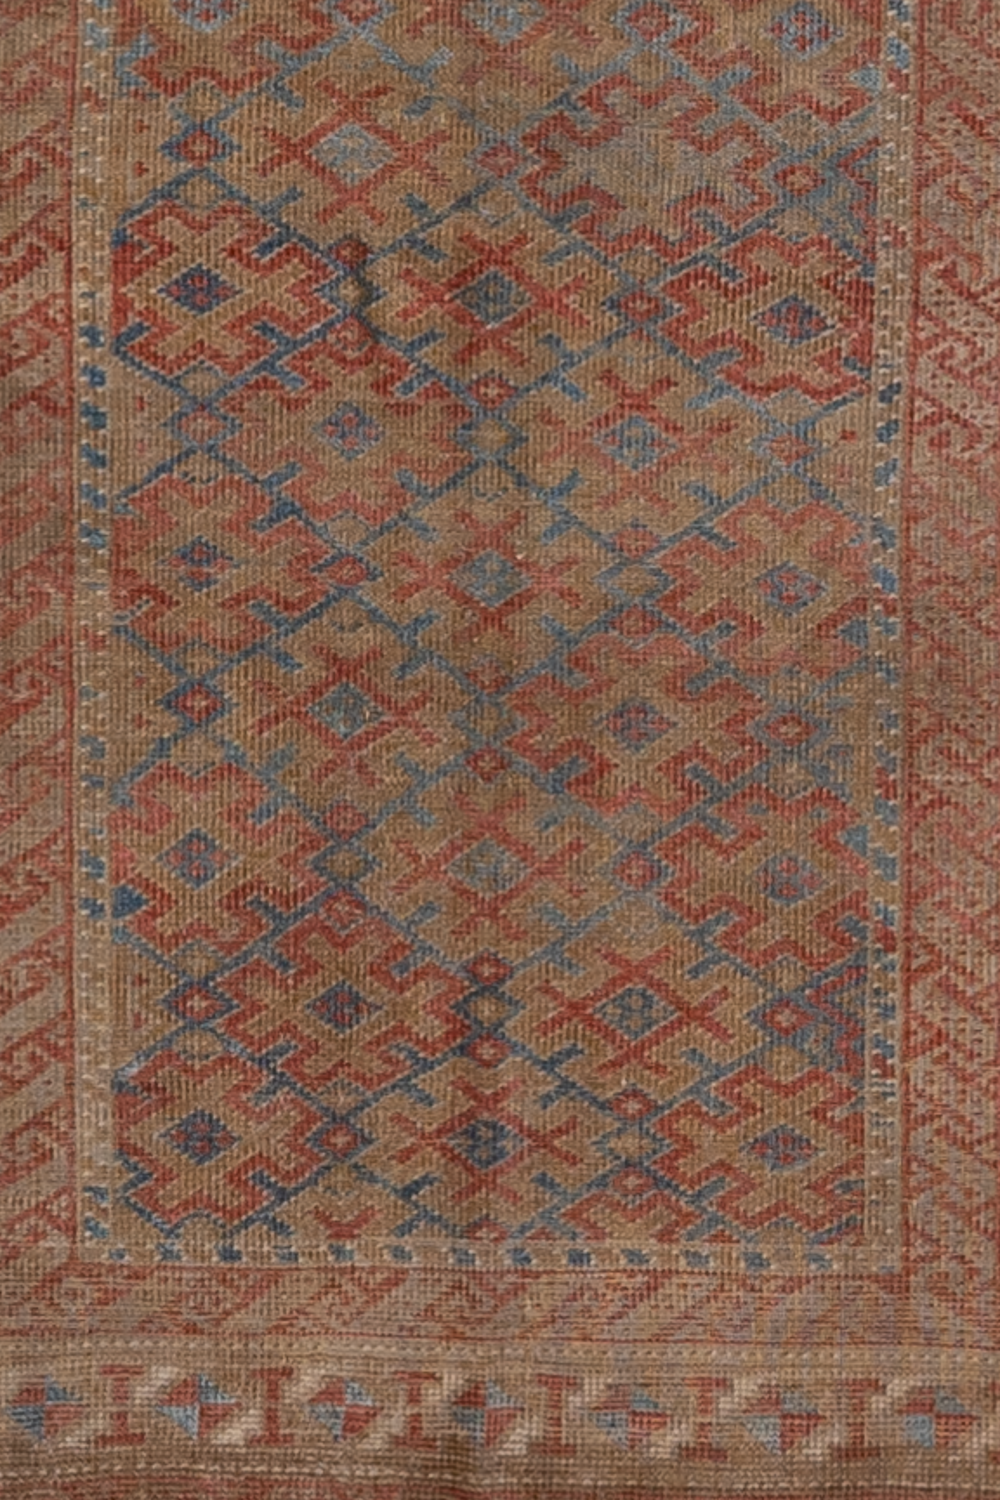 Antique Turkmen Baluch Rug